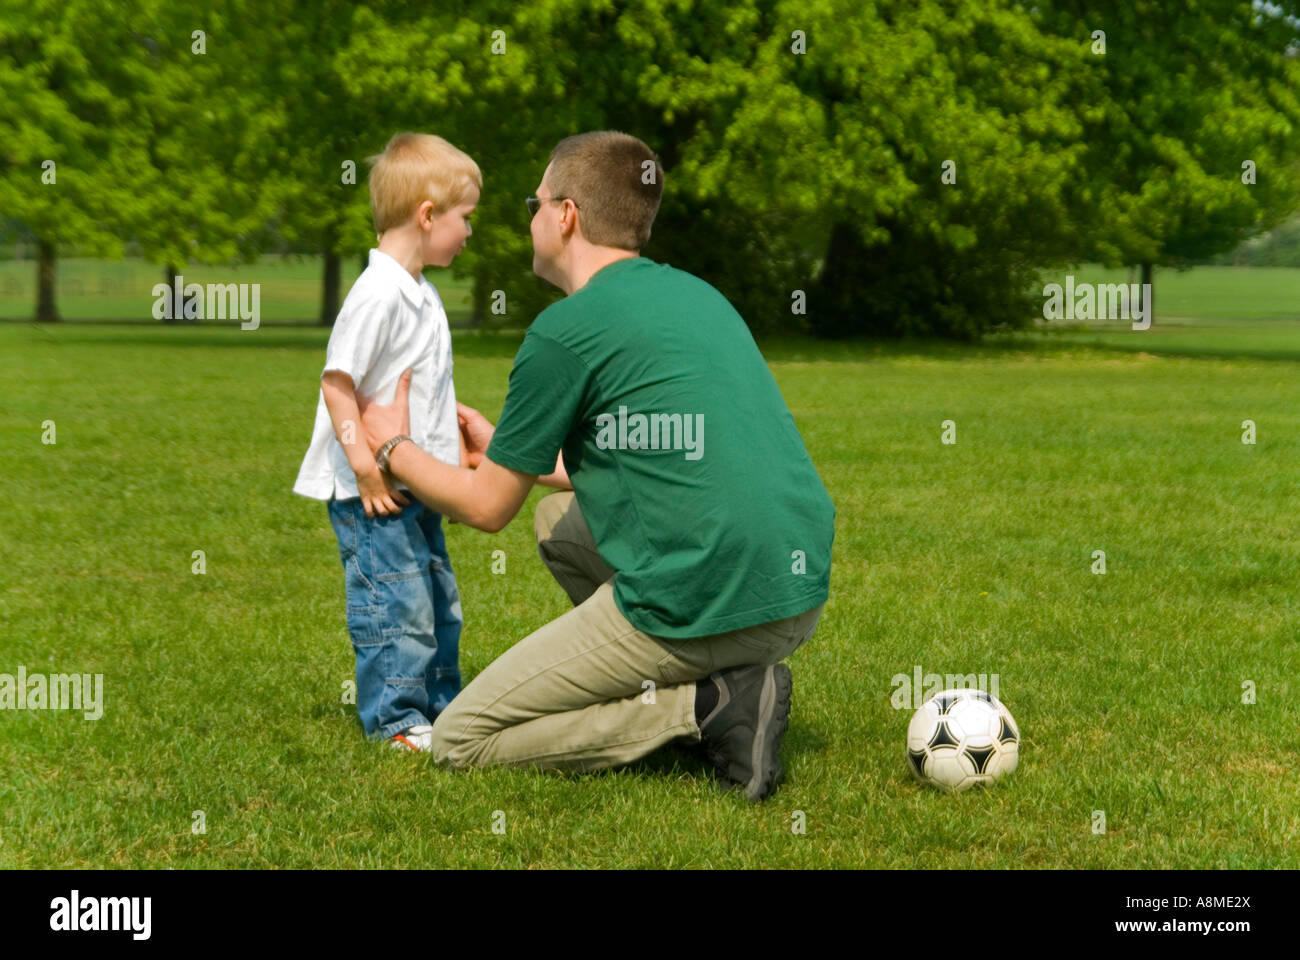 Horizontale Porträt eines jungen Vaters Disziplinierung seinen jungen Sohn während eines Spiels der Fußball im park Stockfoto